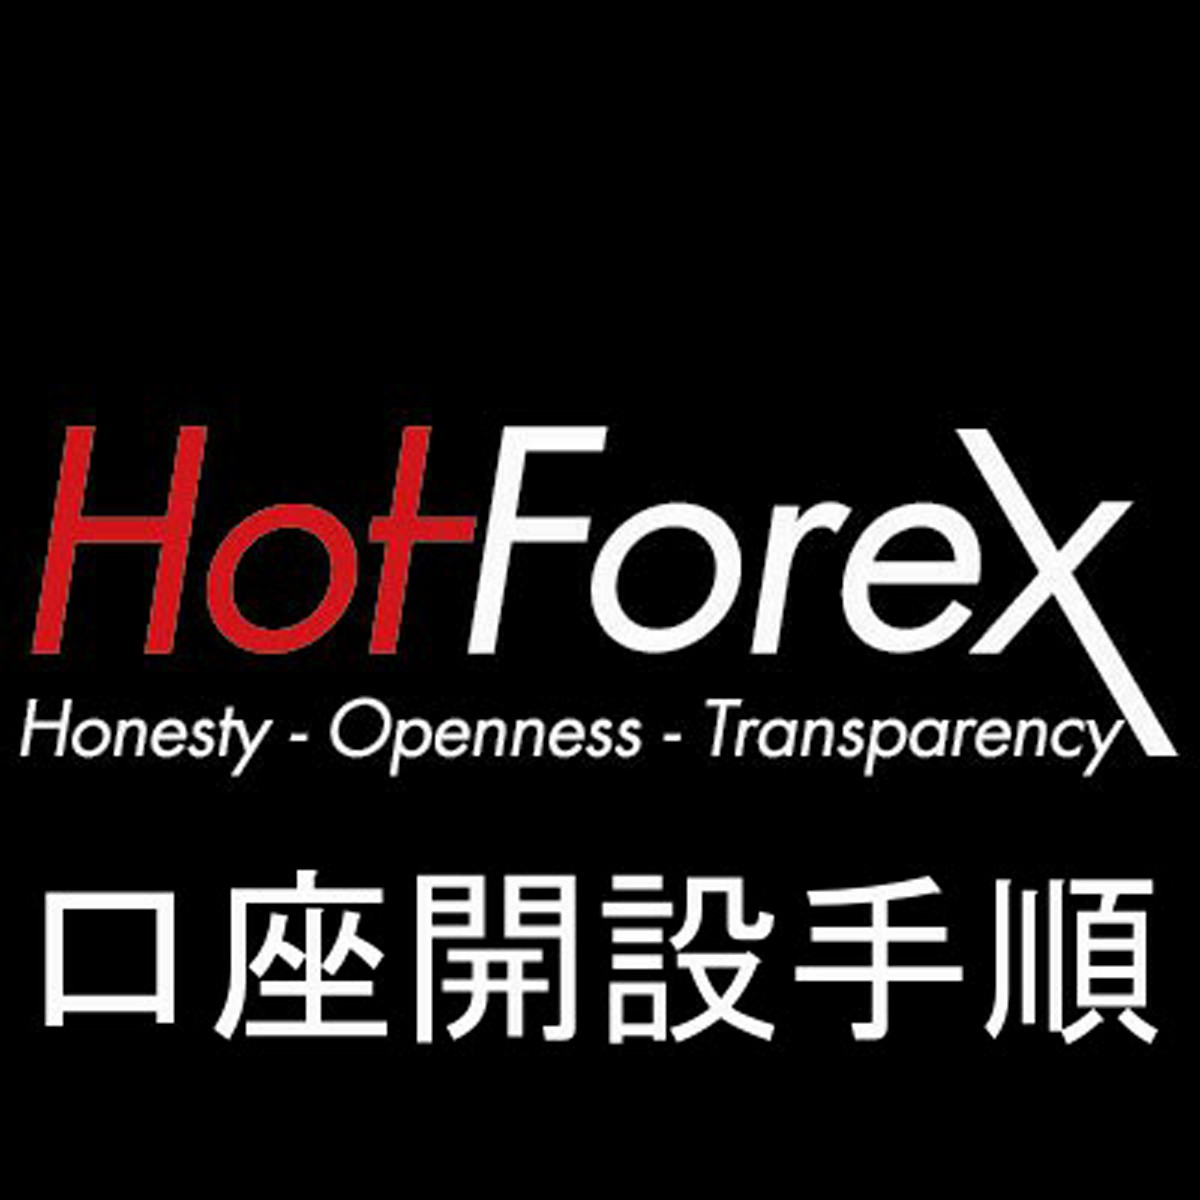 HotForexの口座開設方法を最初の登録手順から解説します